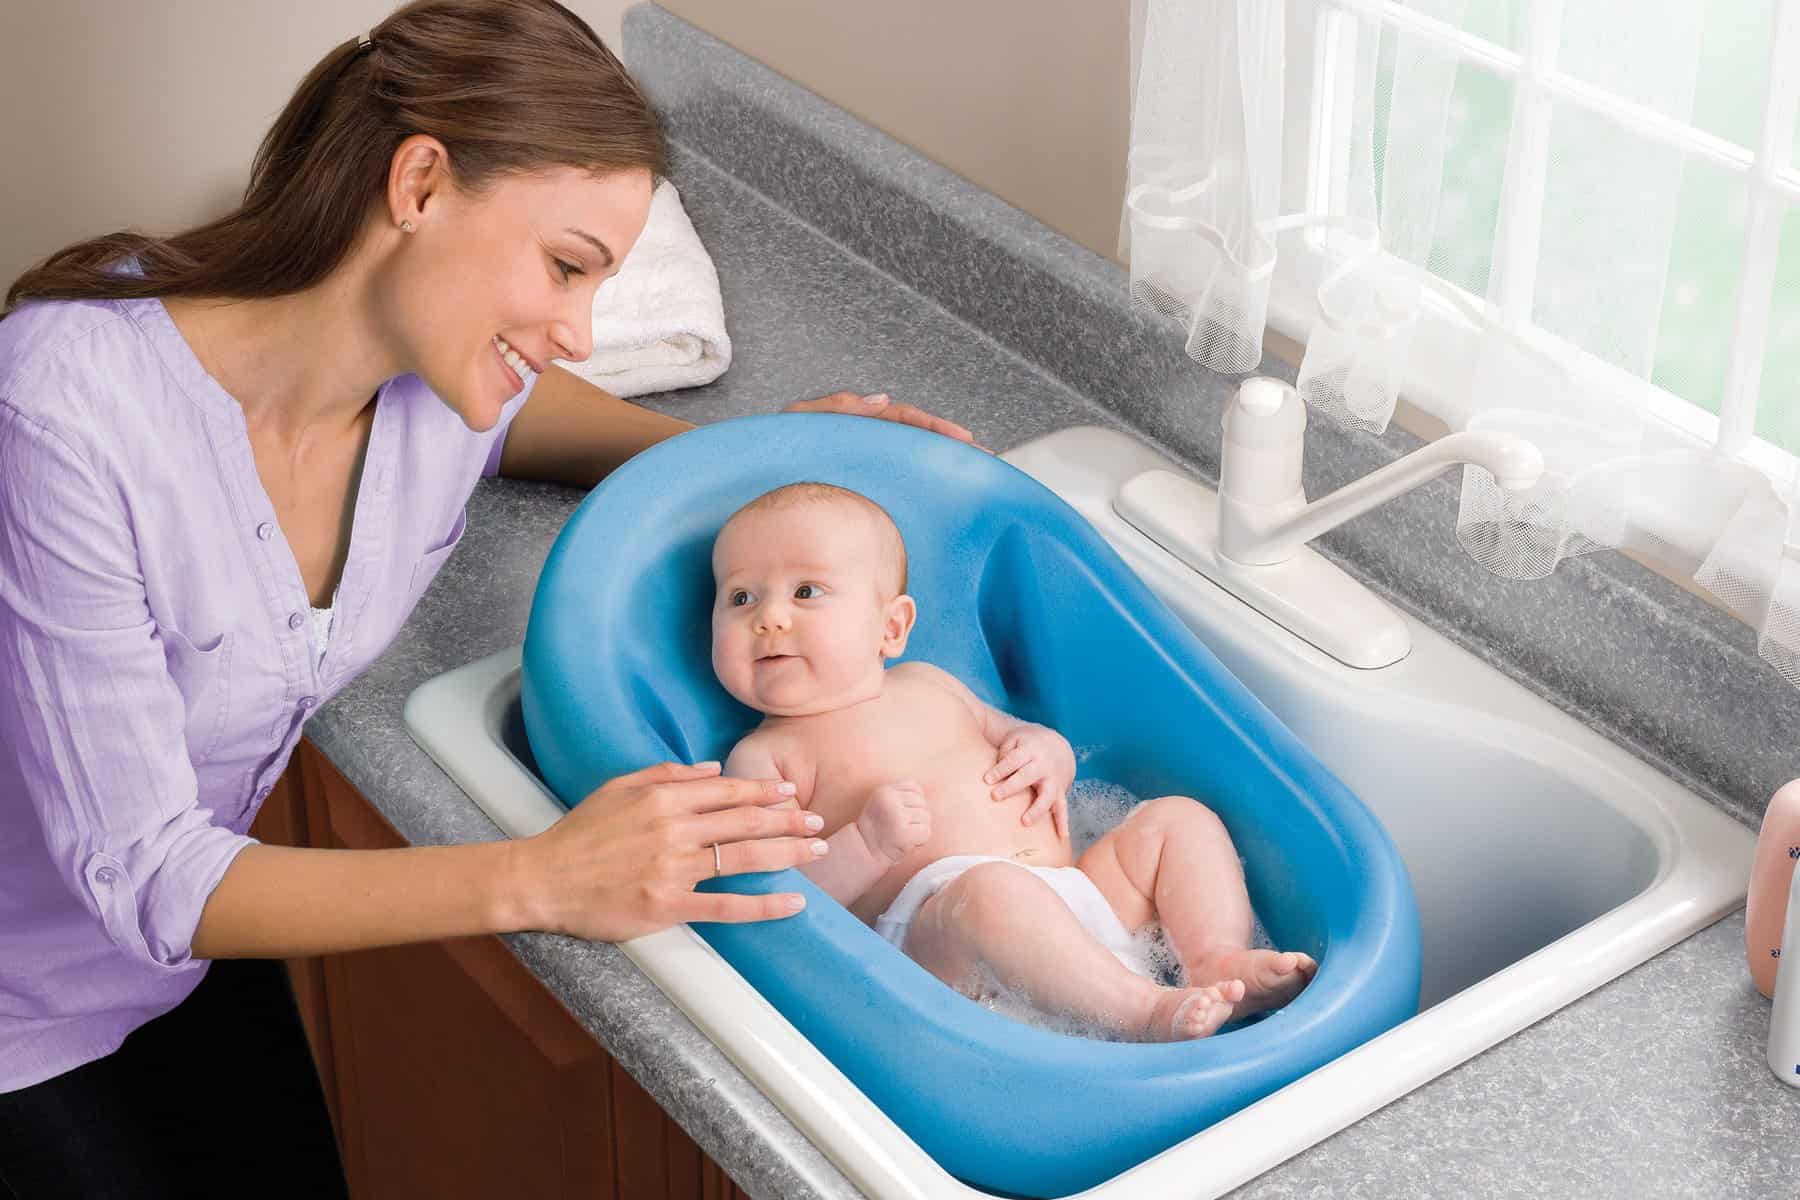 best baby tub for kitchen sink